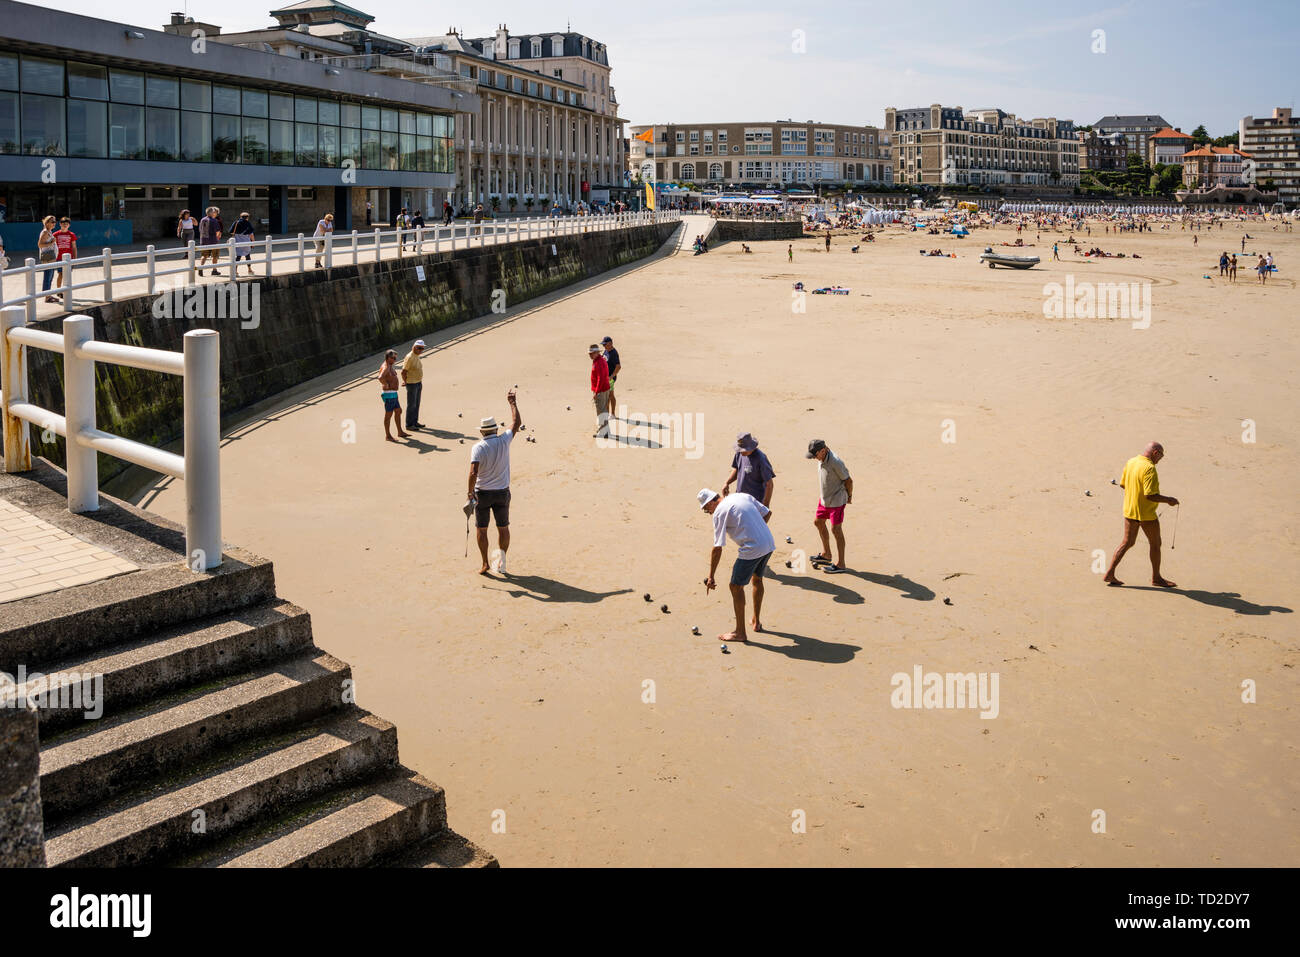 La mezza età uomini giocando a bocce (boules) sulla spiaggia, Plage de l'Ecluse, Dinard, Brittany, Francia Foto Stock